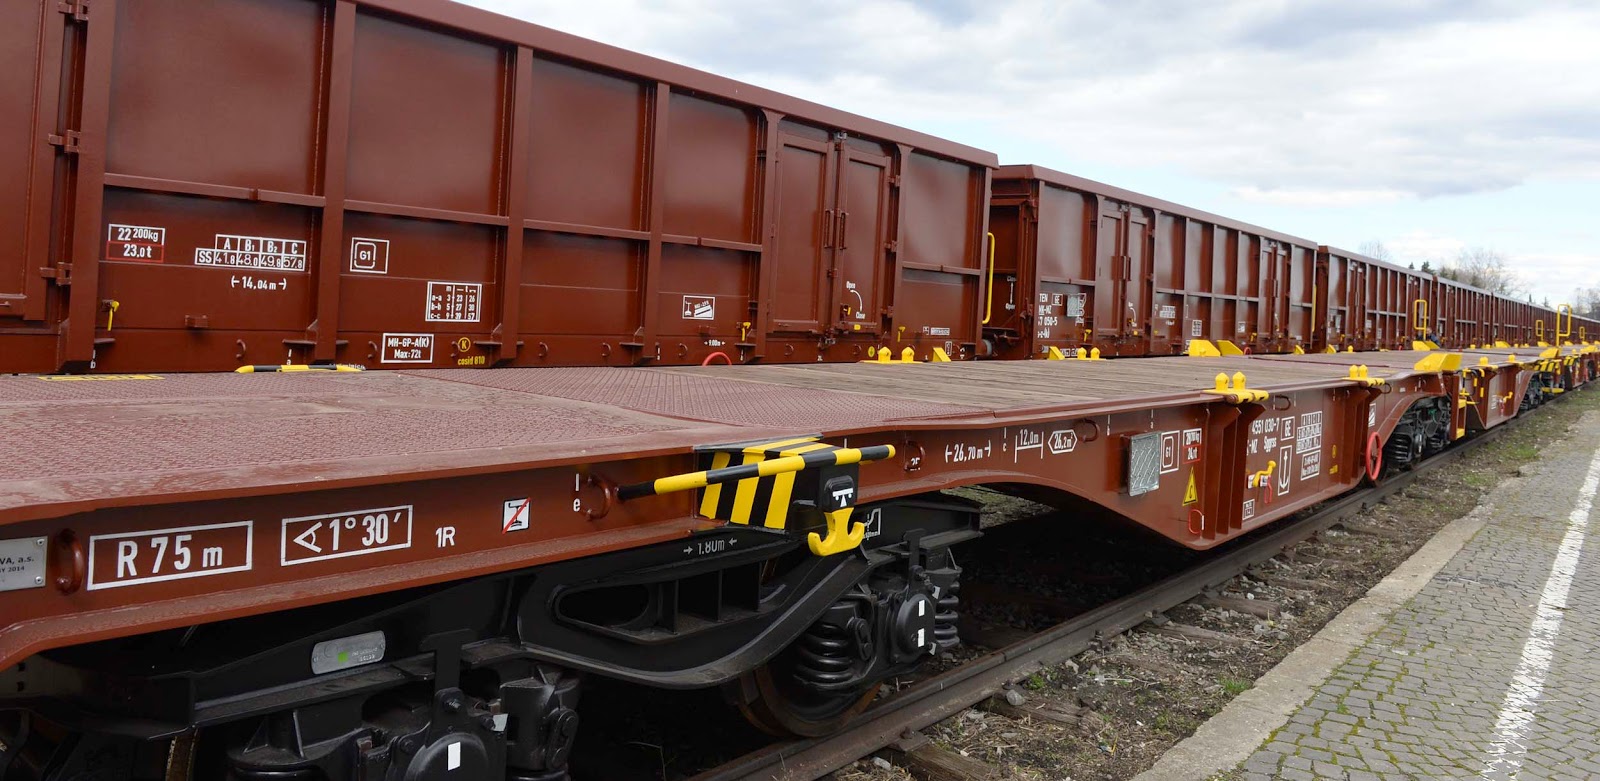 Bilder des Tages 107 Neue Güterwagen für die